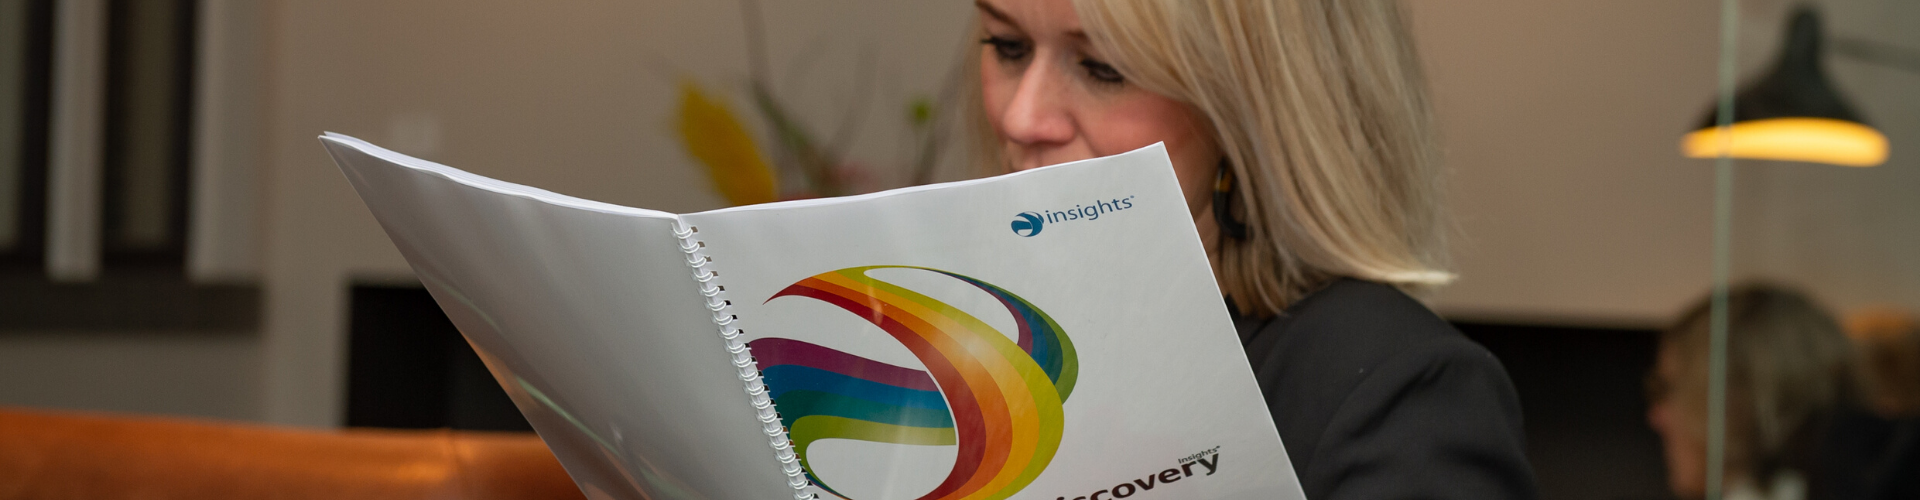 Insights Discovery training - Kleurrijk Samenwerken | Tandemkracht